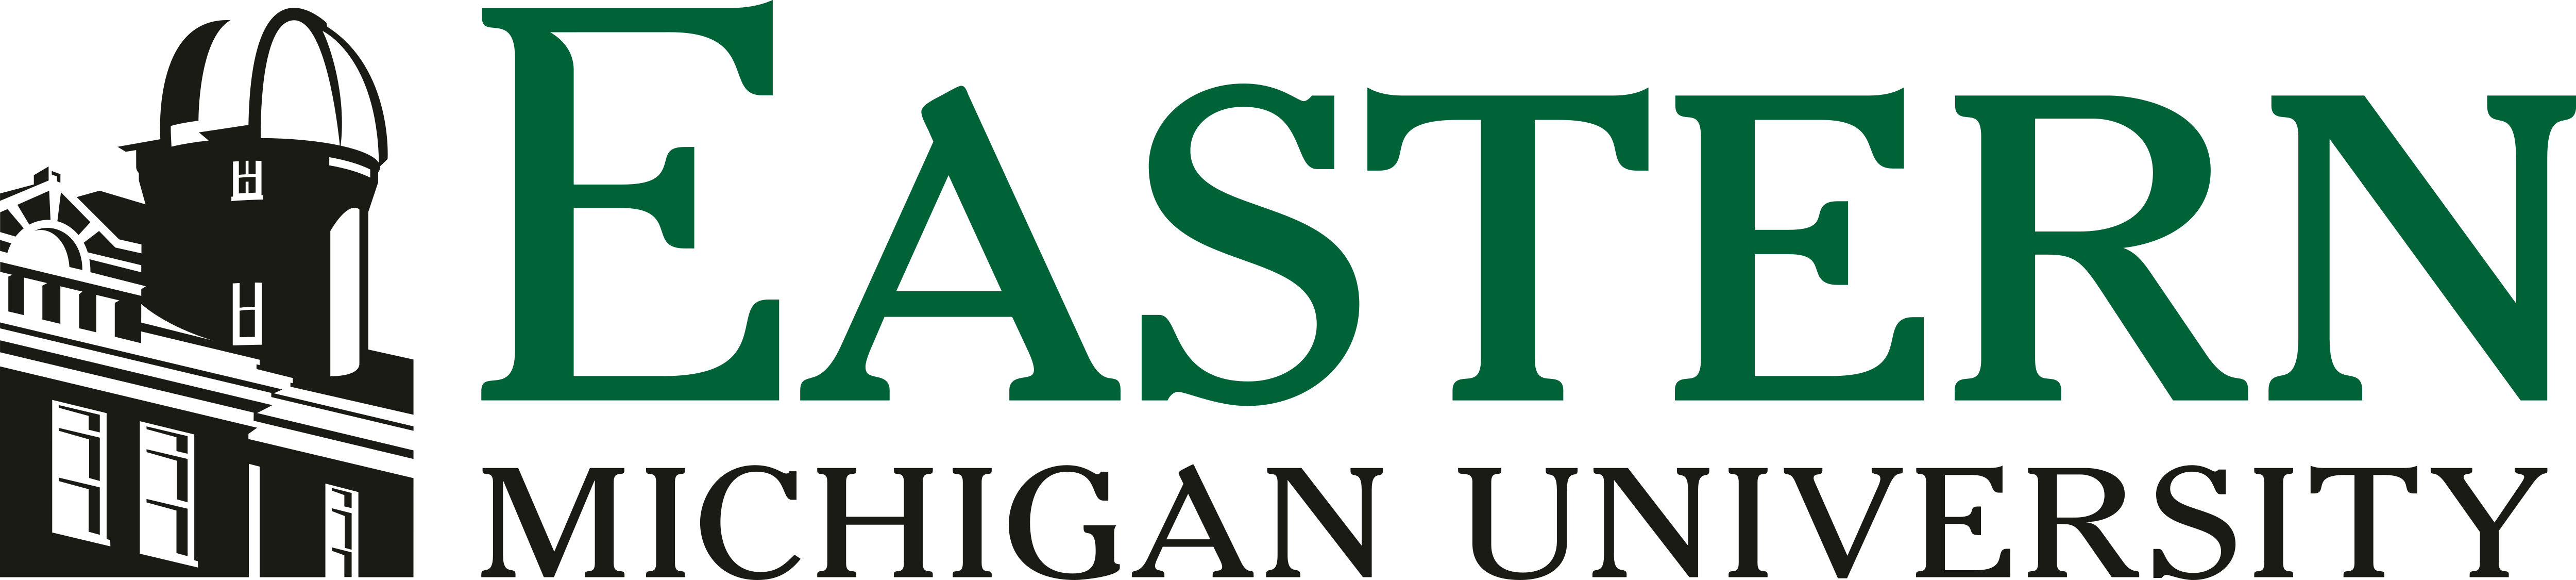 Eastern Michigan University – Logos Download